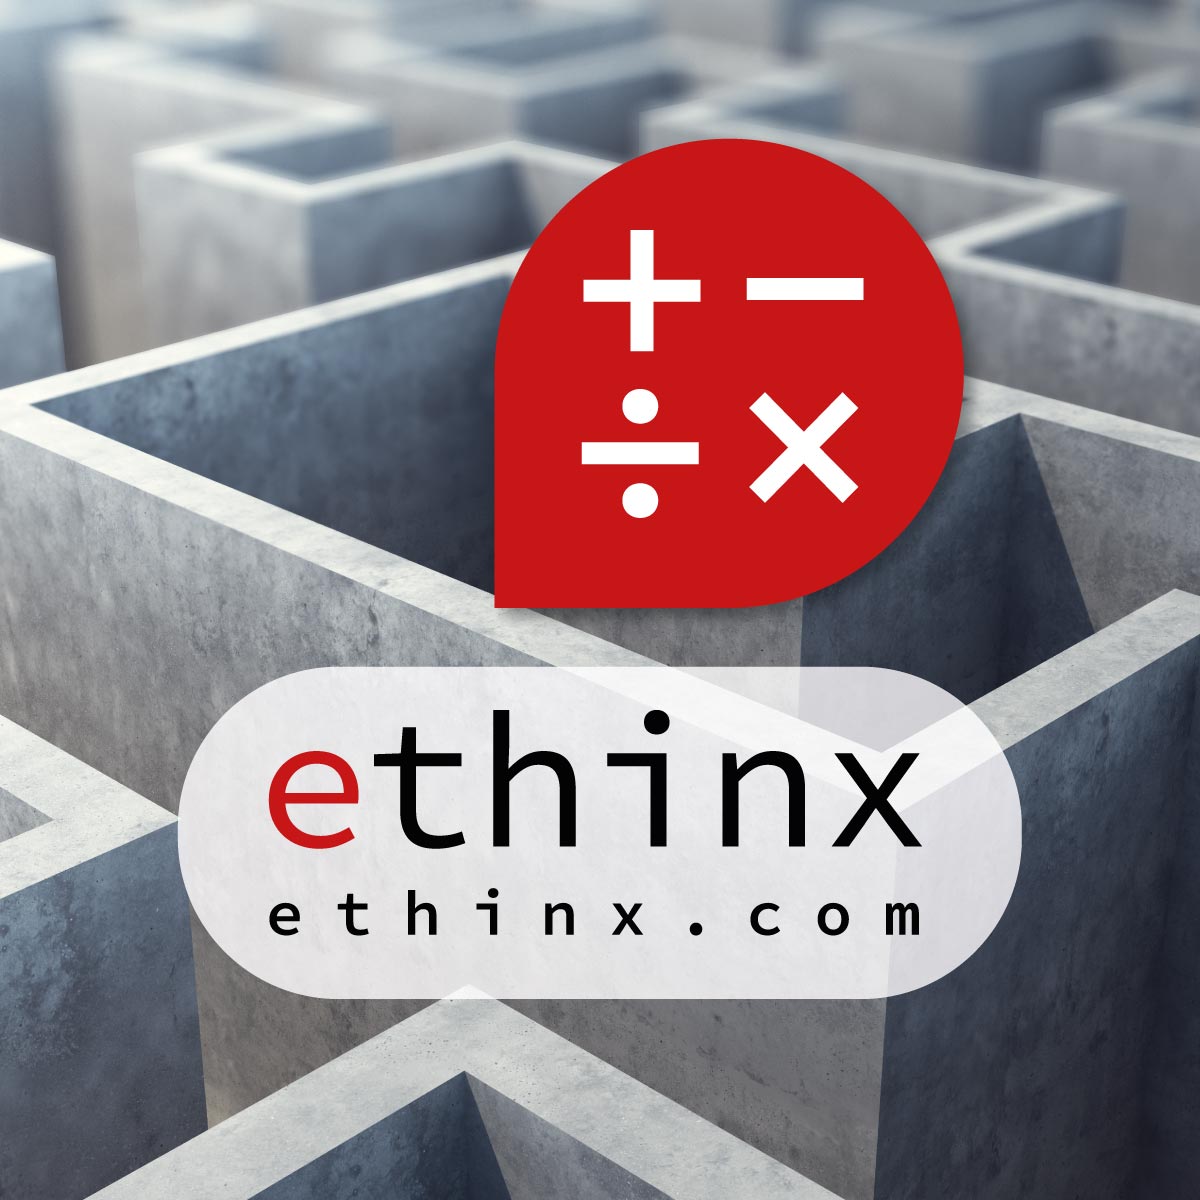 ethinx.com - Ai Branding name